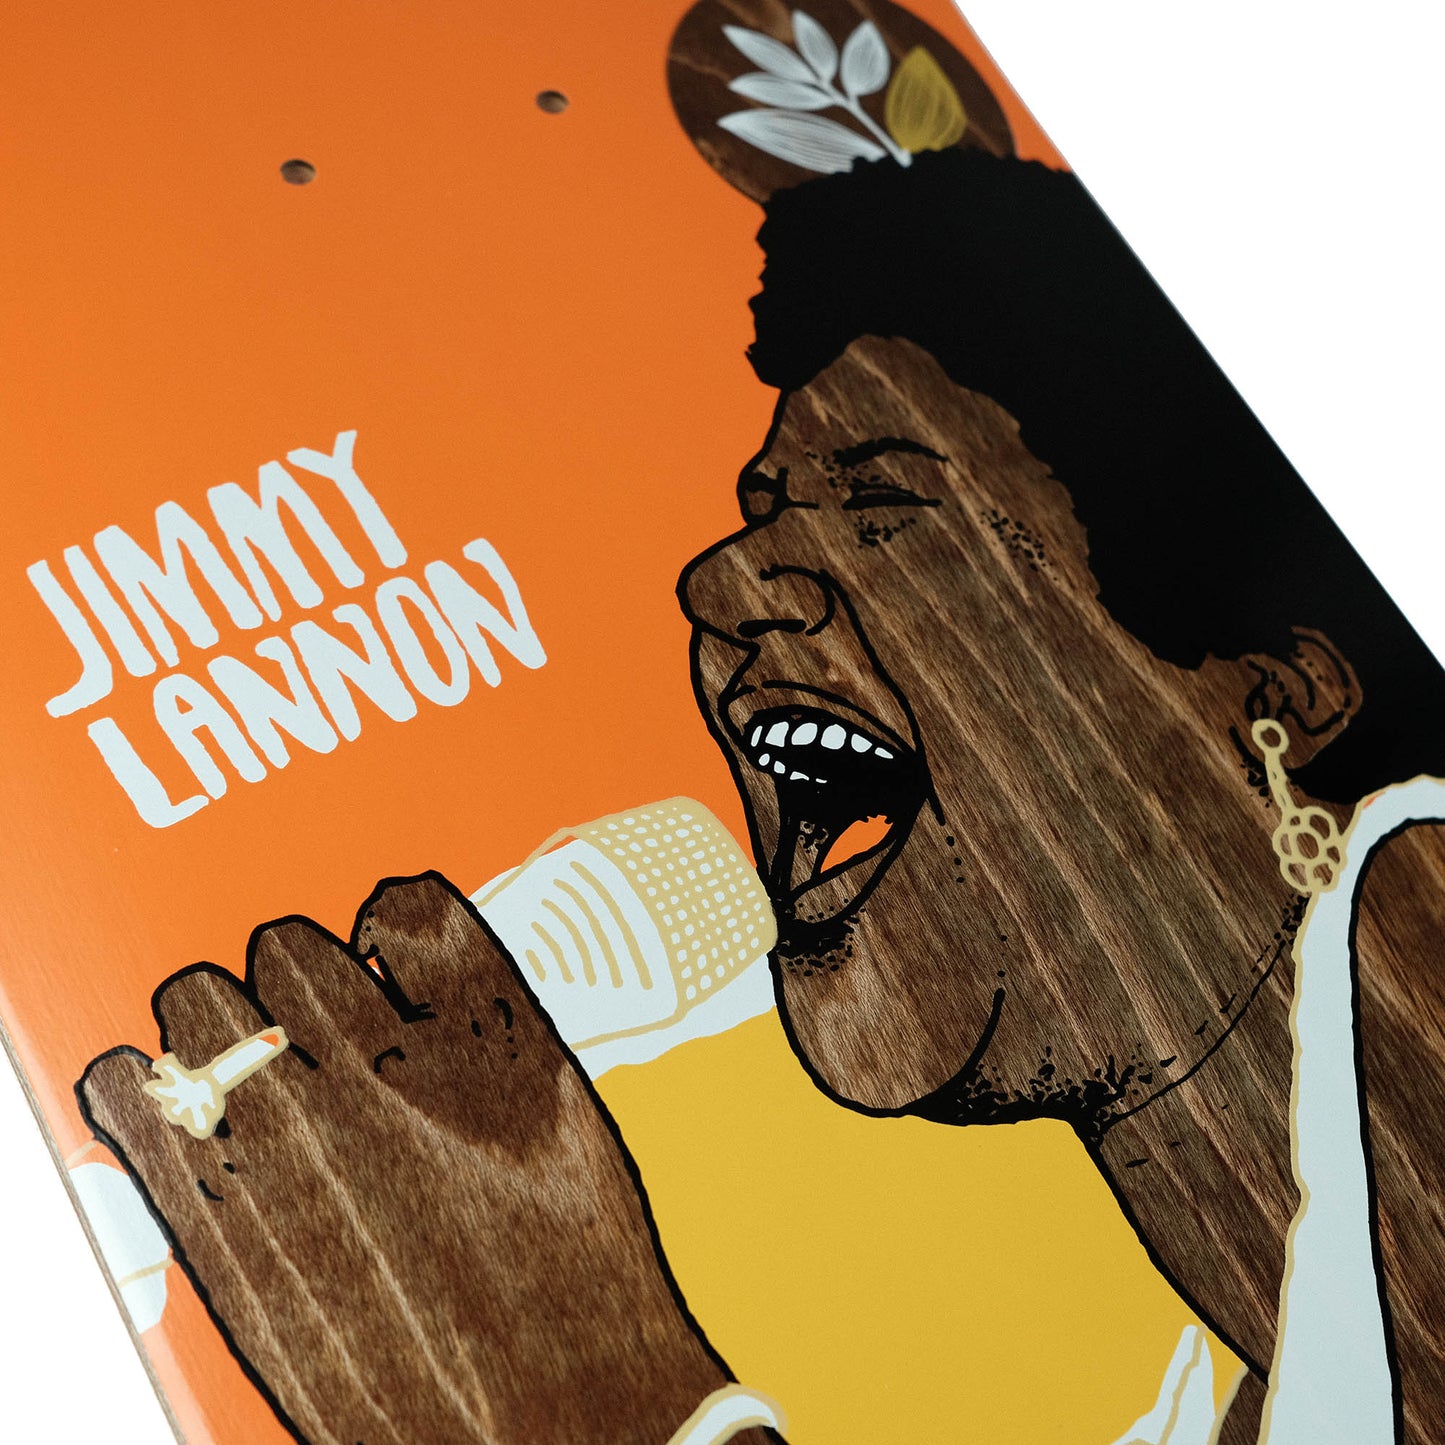 Magenta deck Jimmy Lannon Free Jazz 8.125"